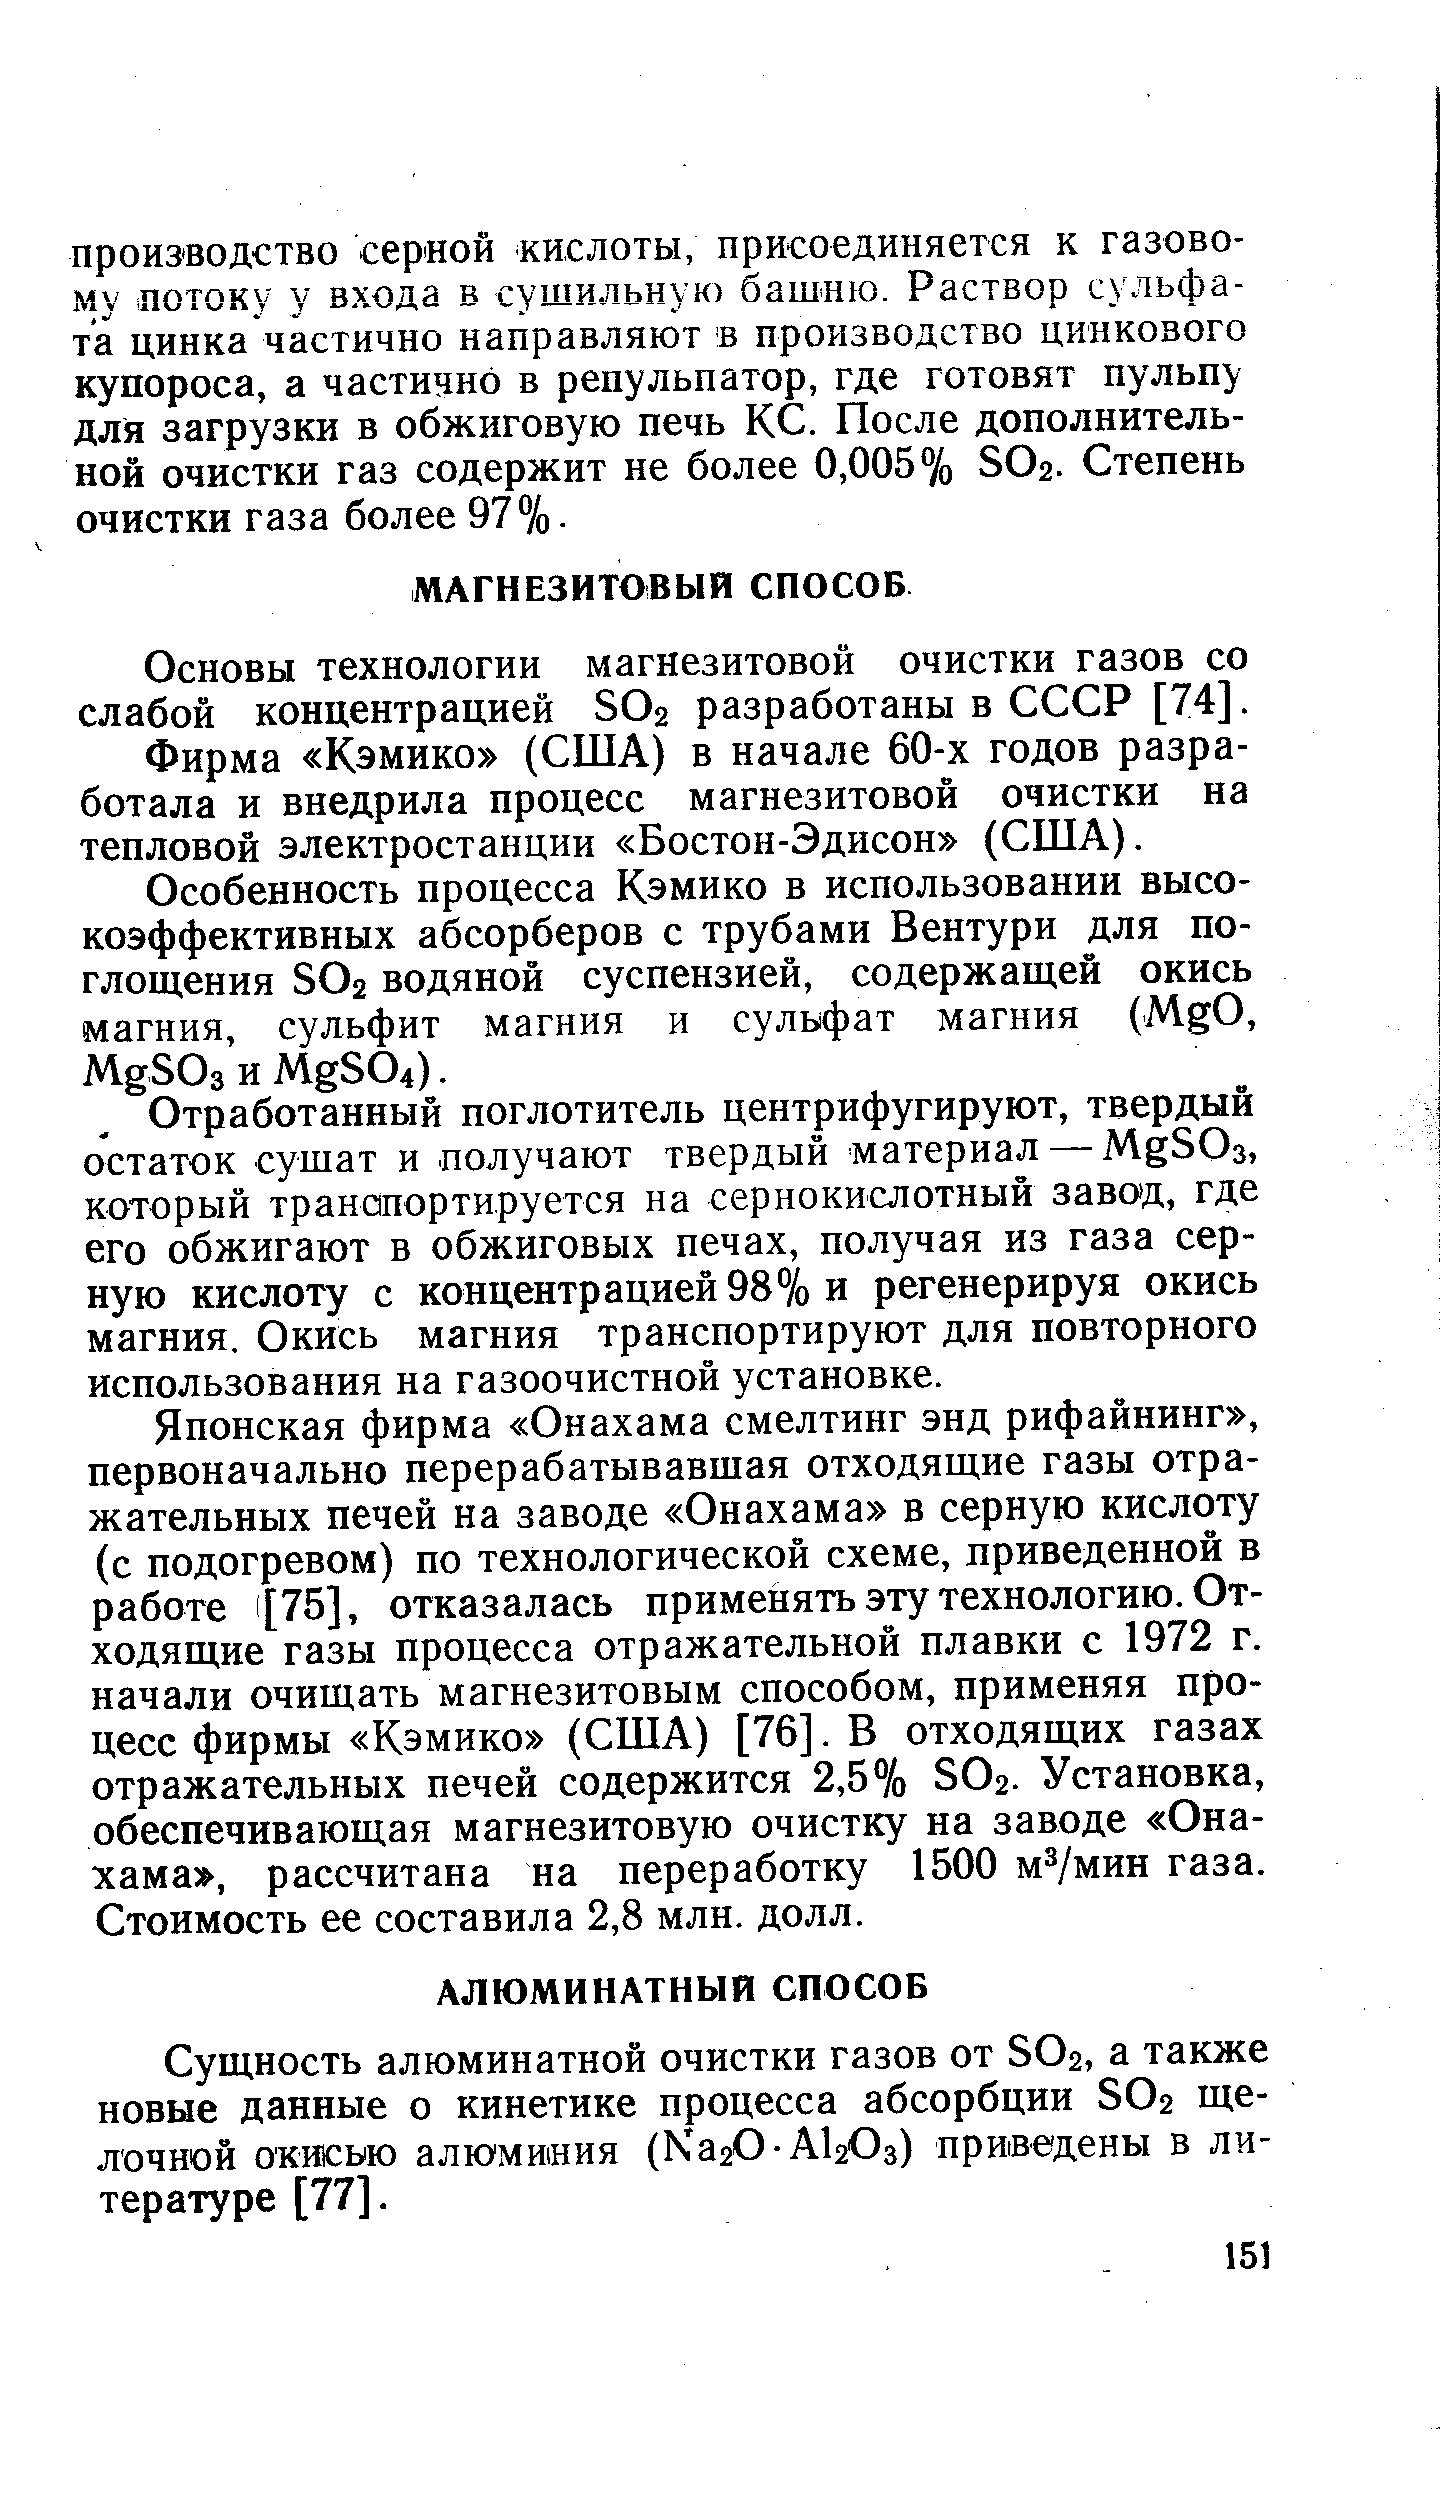 Основы технологии магнезитовой очистки газов со слабой концентрацией SO2 разработаны в СССР [74].